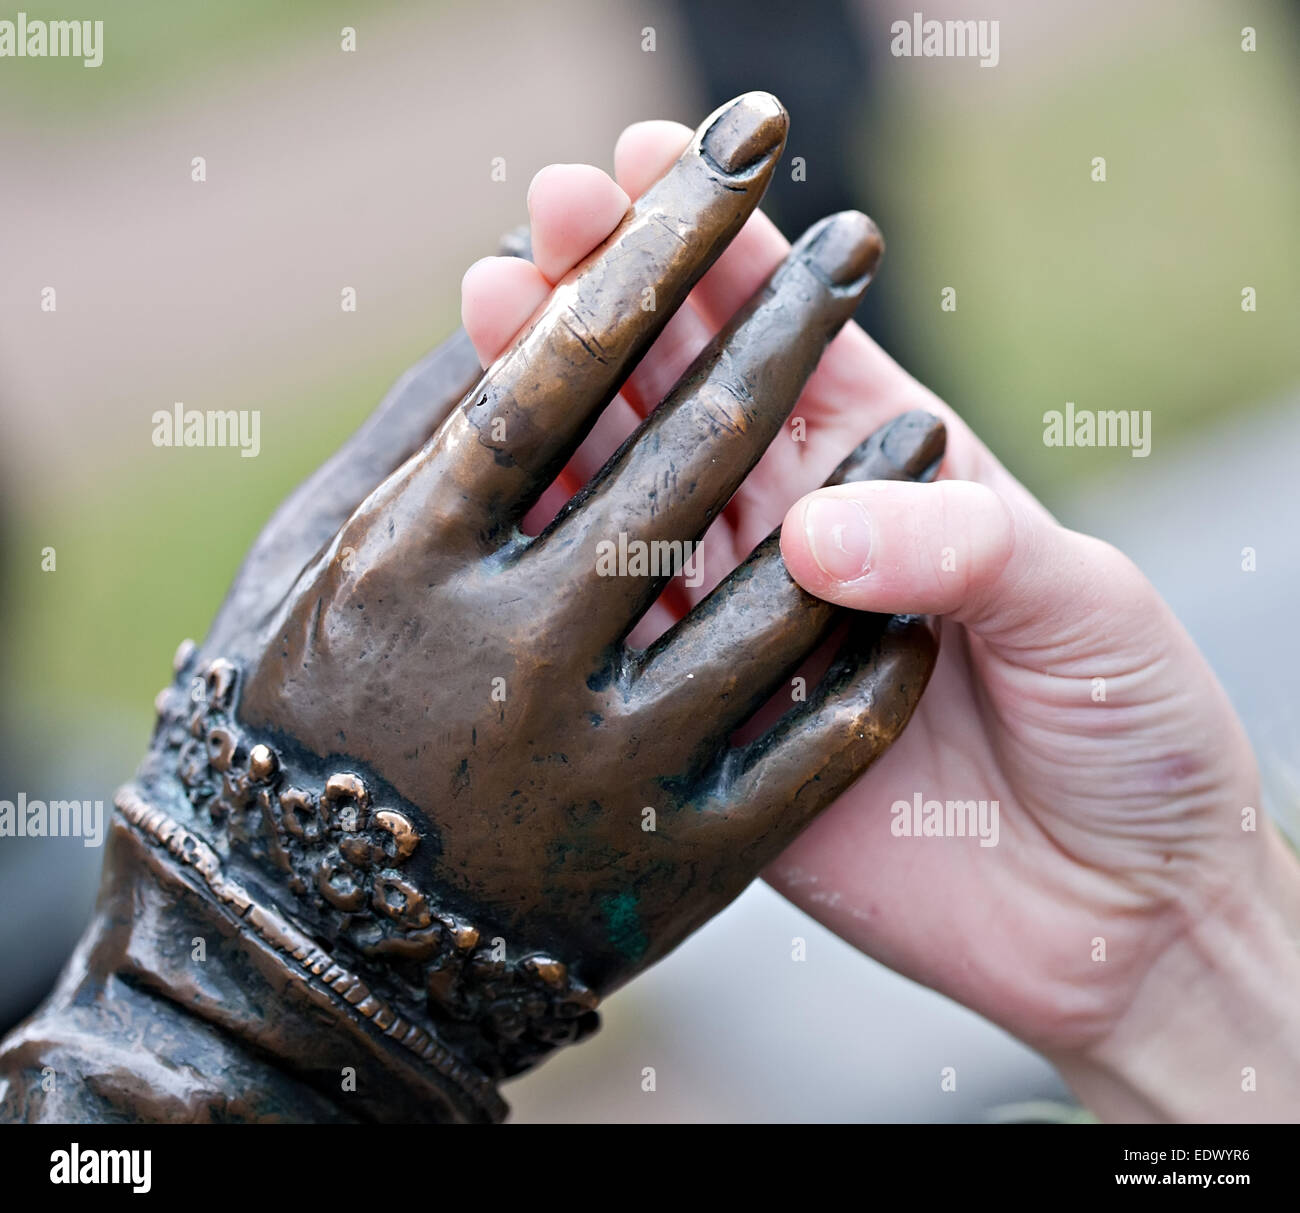 Toque acercamiento de las dos manos: estatua de metal y derechos niño Foto de stock